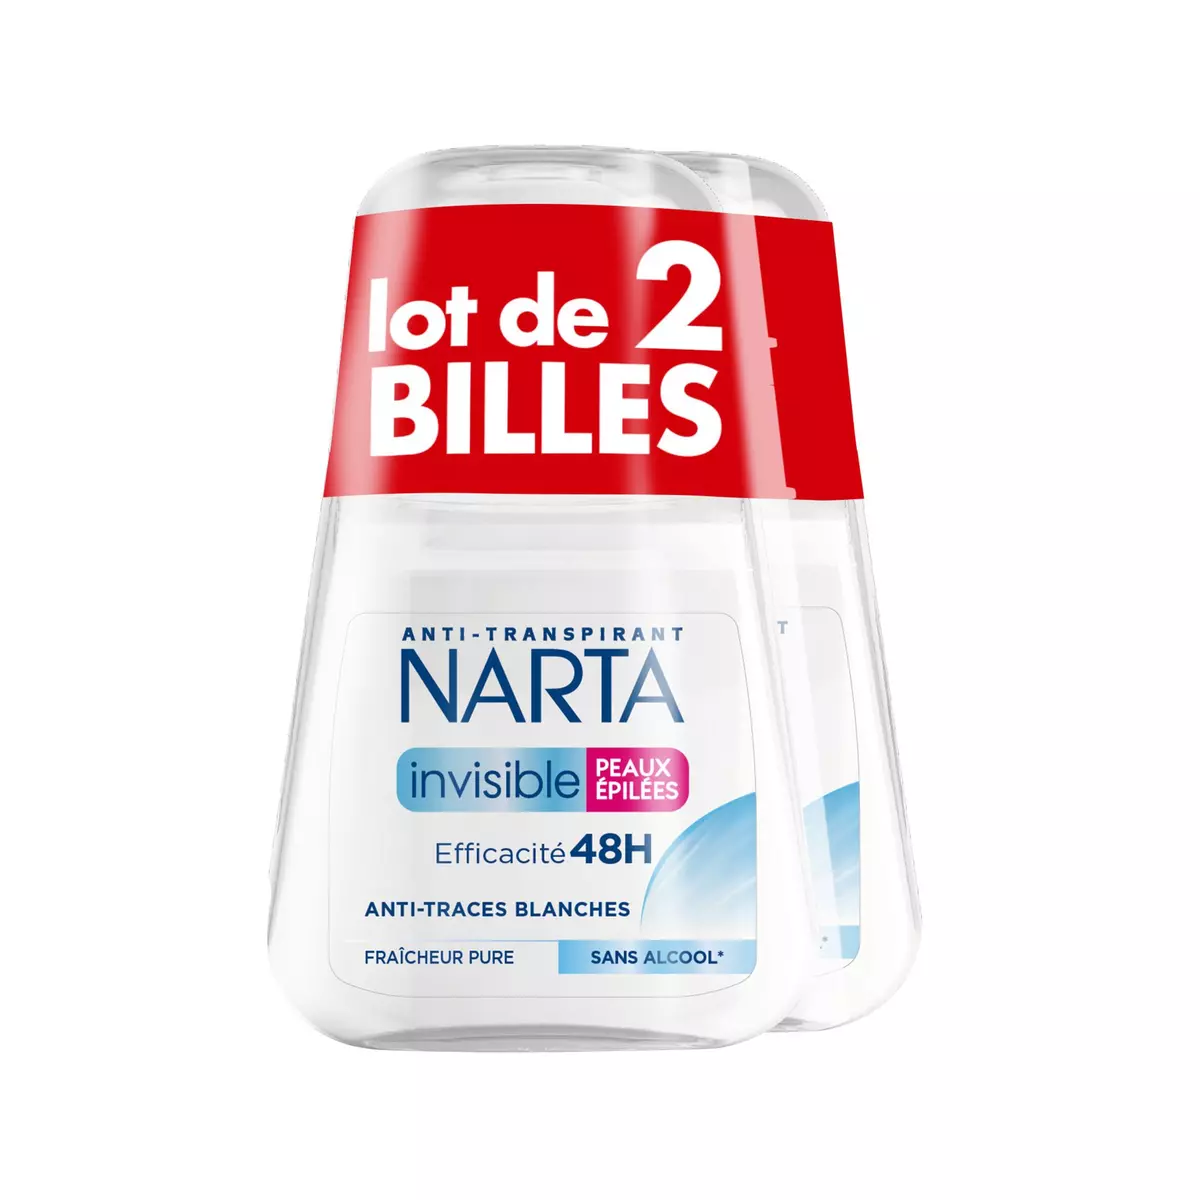 NARTA Déodorant bille invisible fraîcheur pure 48h anti-traces peaux épilées 2x50ml